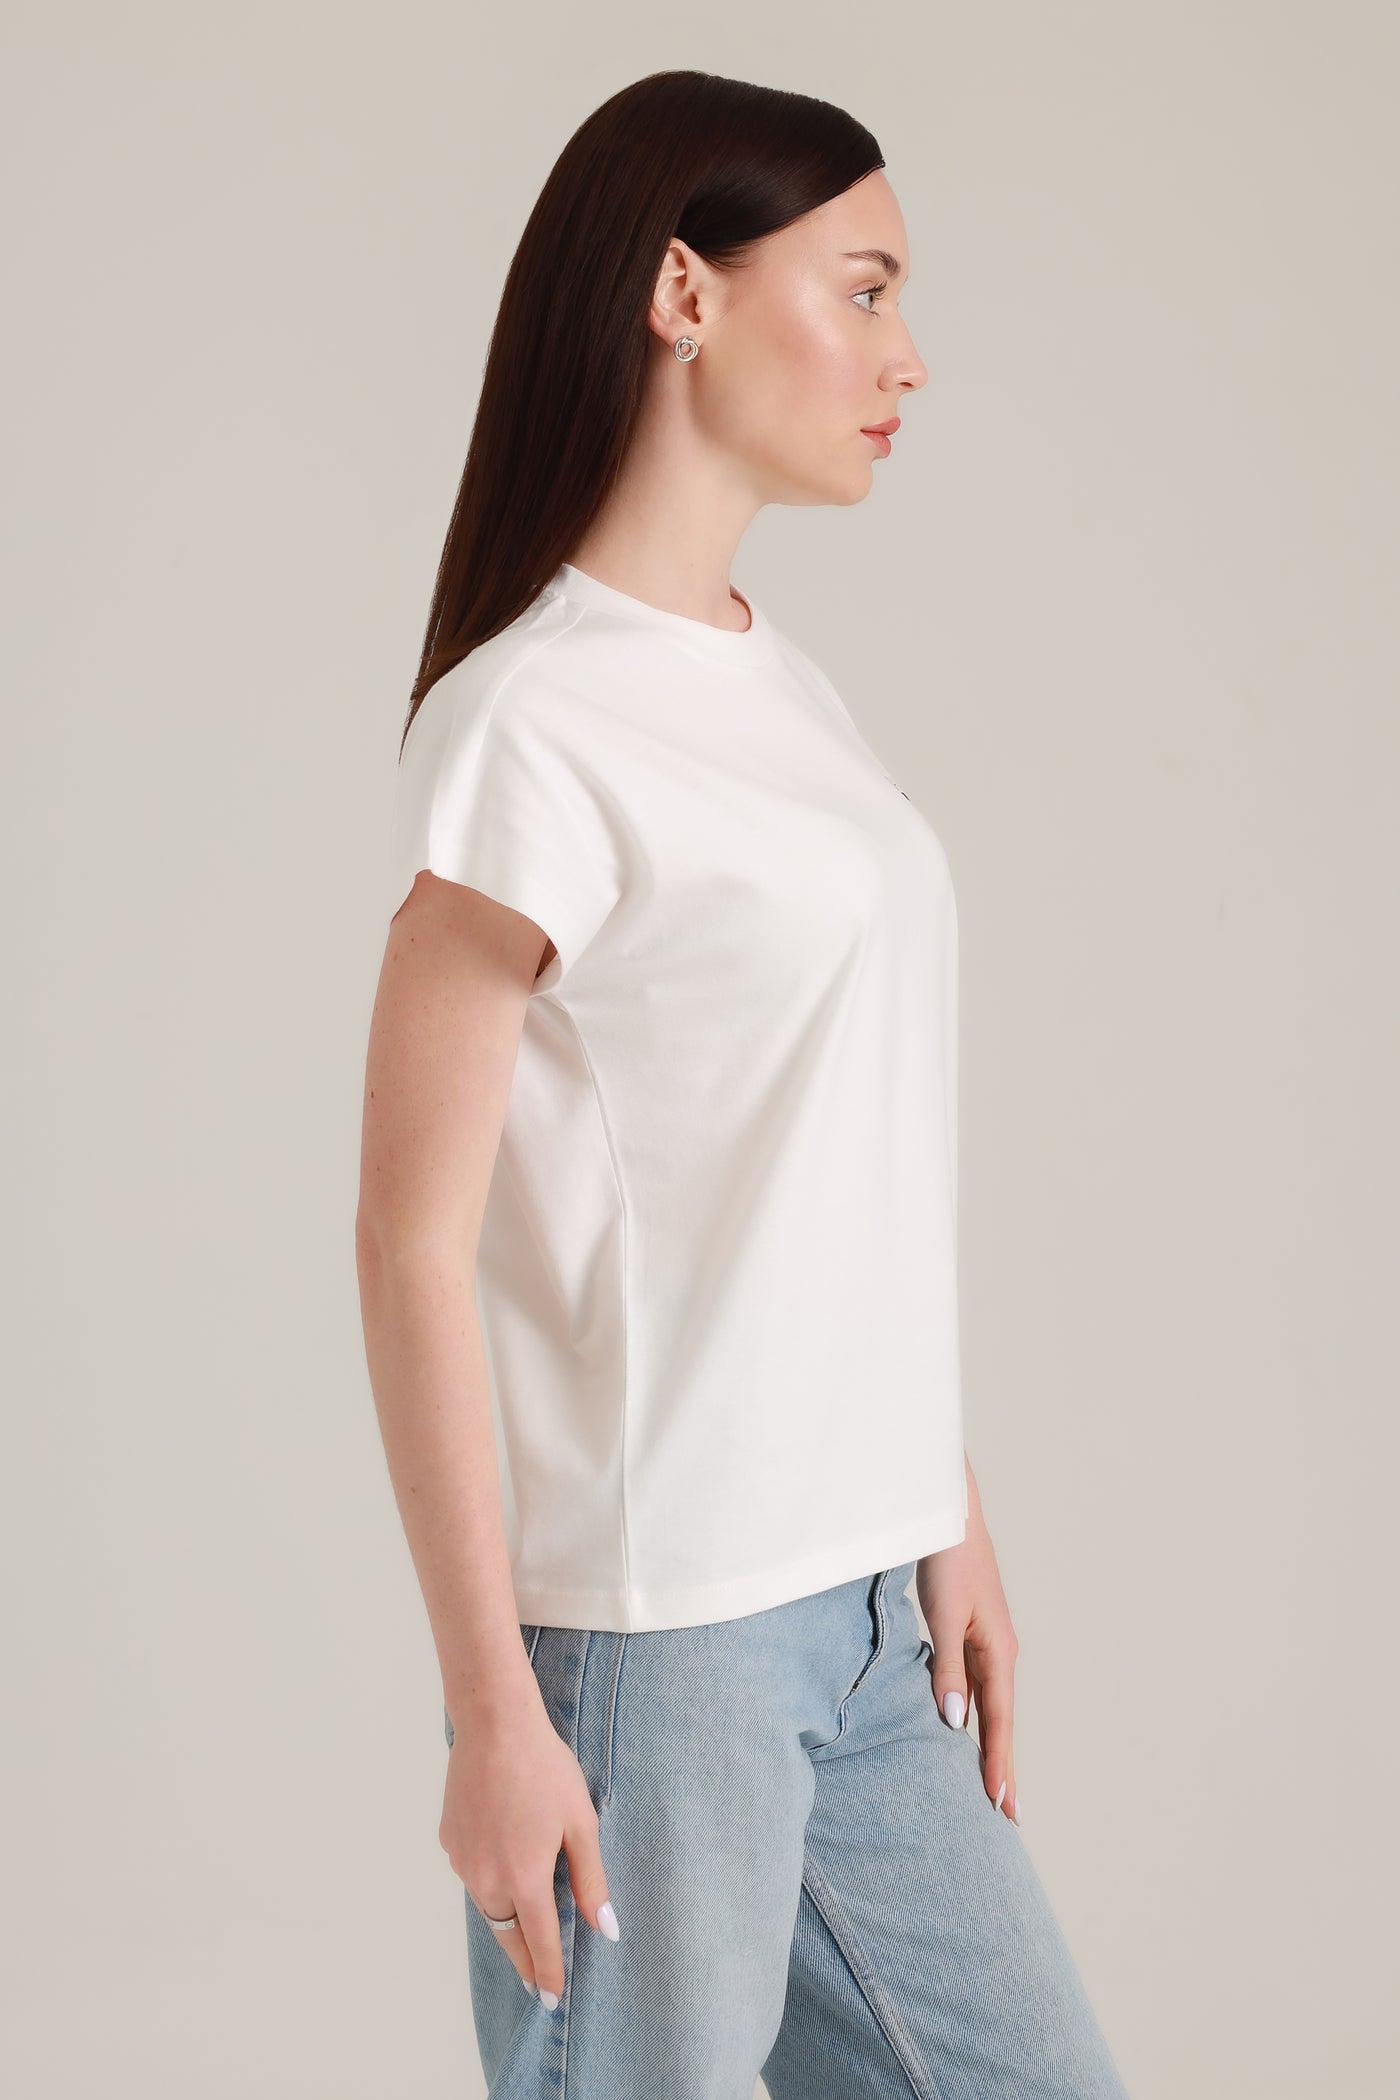 T-Shirt Women Short Sleeves Cool Paka White Alyssum